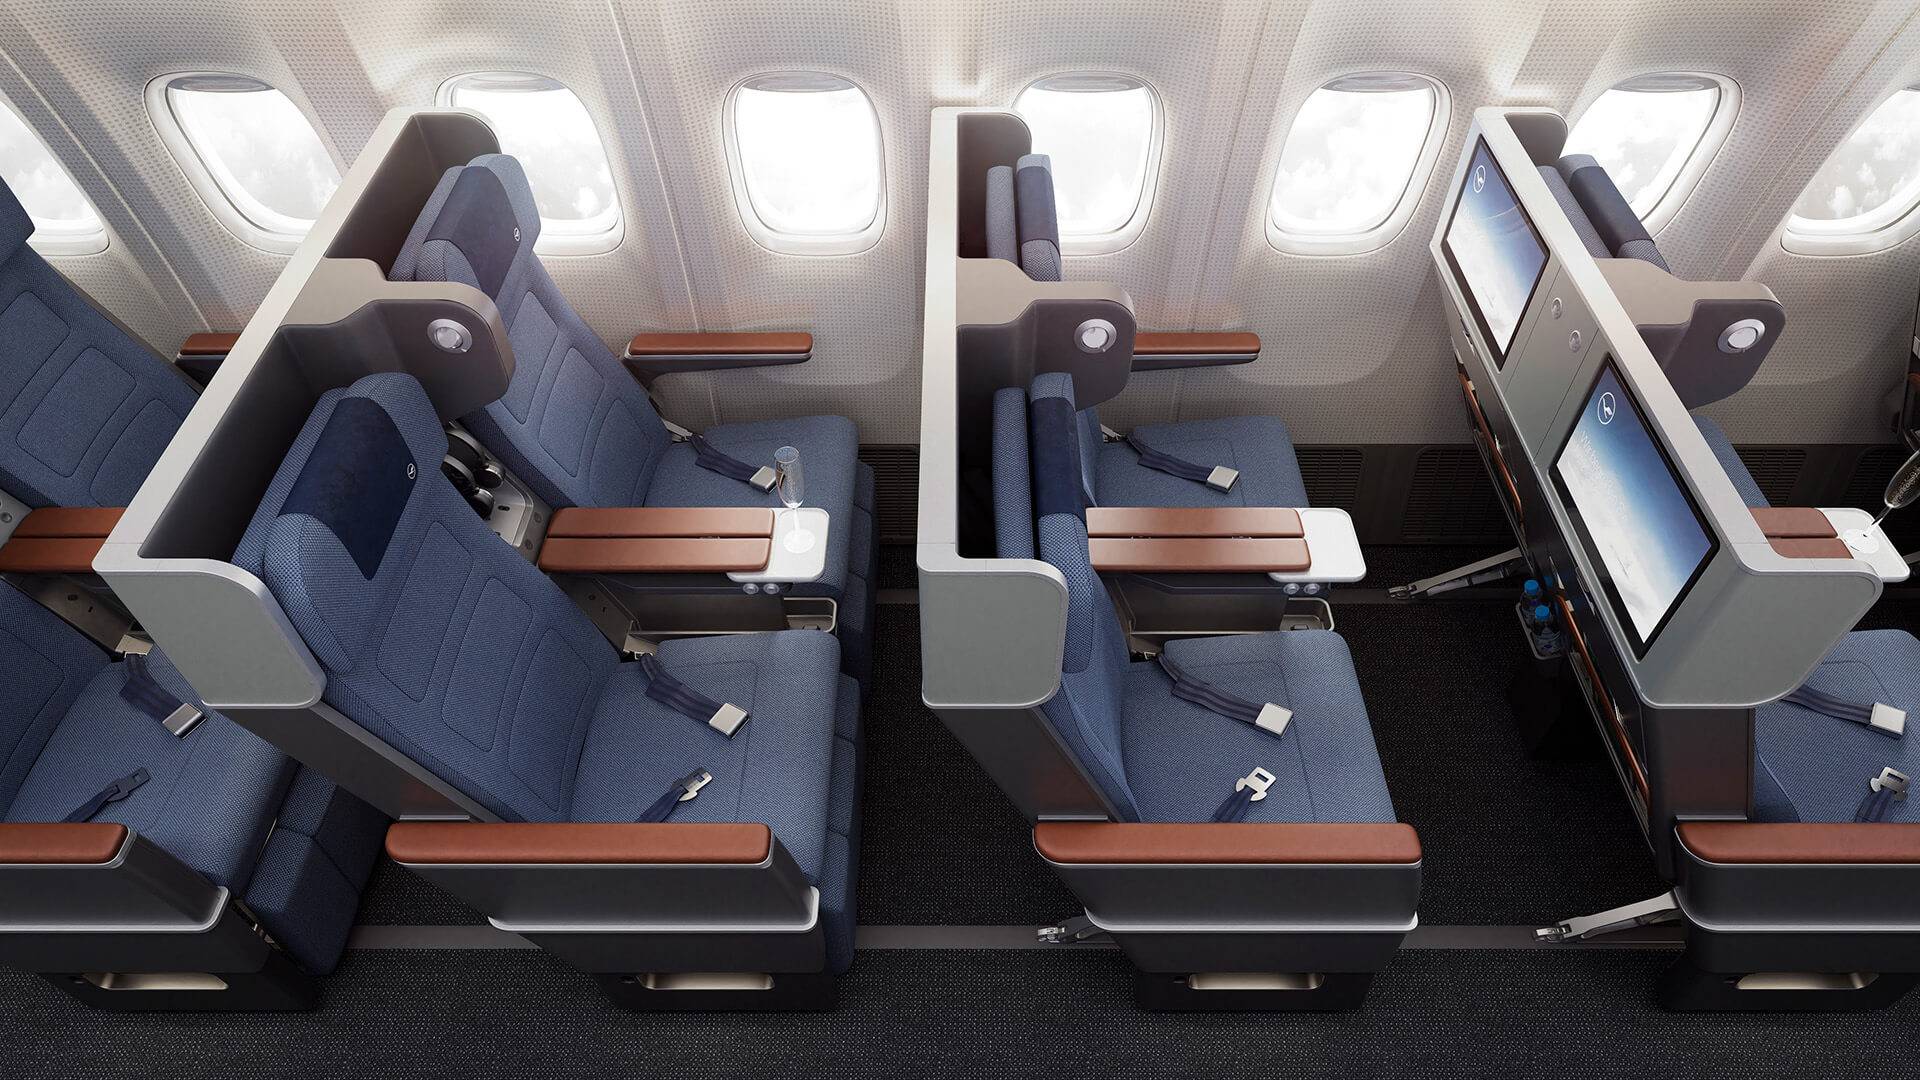 Overhead view of Lufthansa's Premium Economy Seats